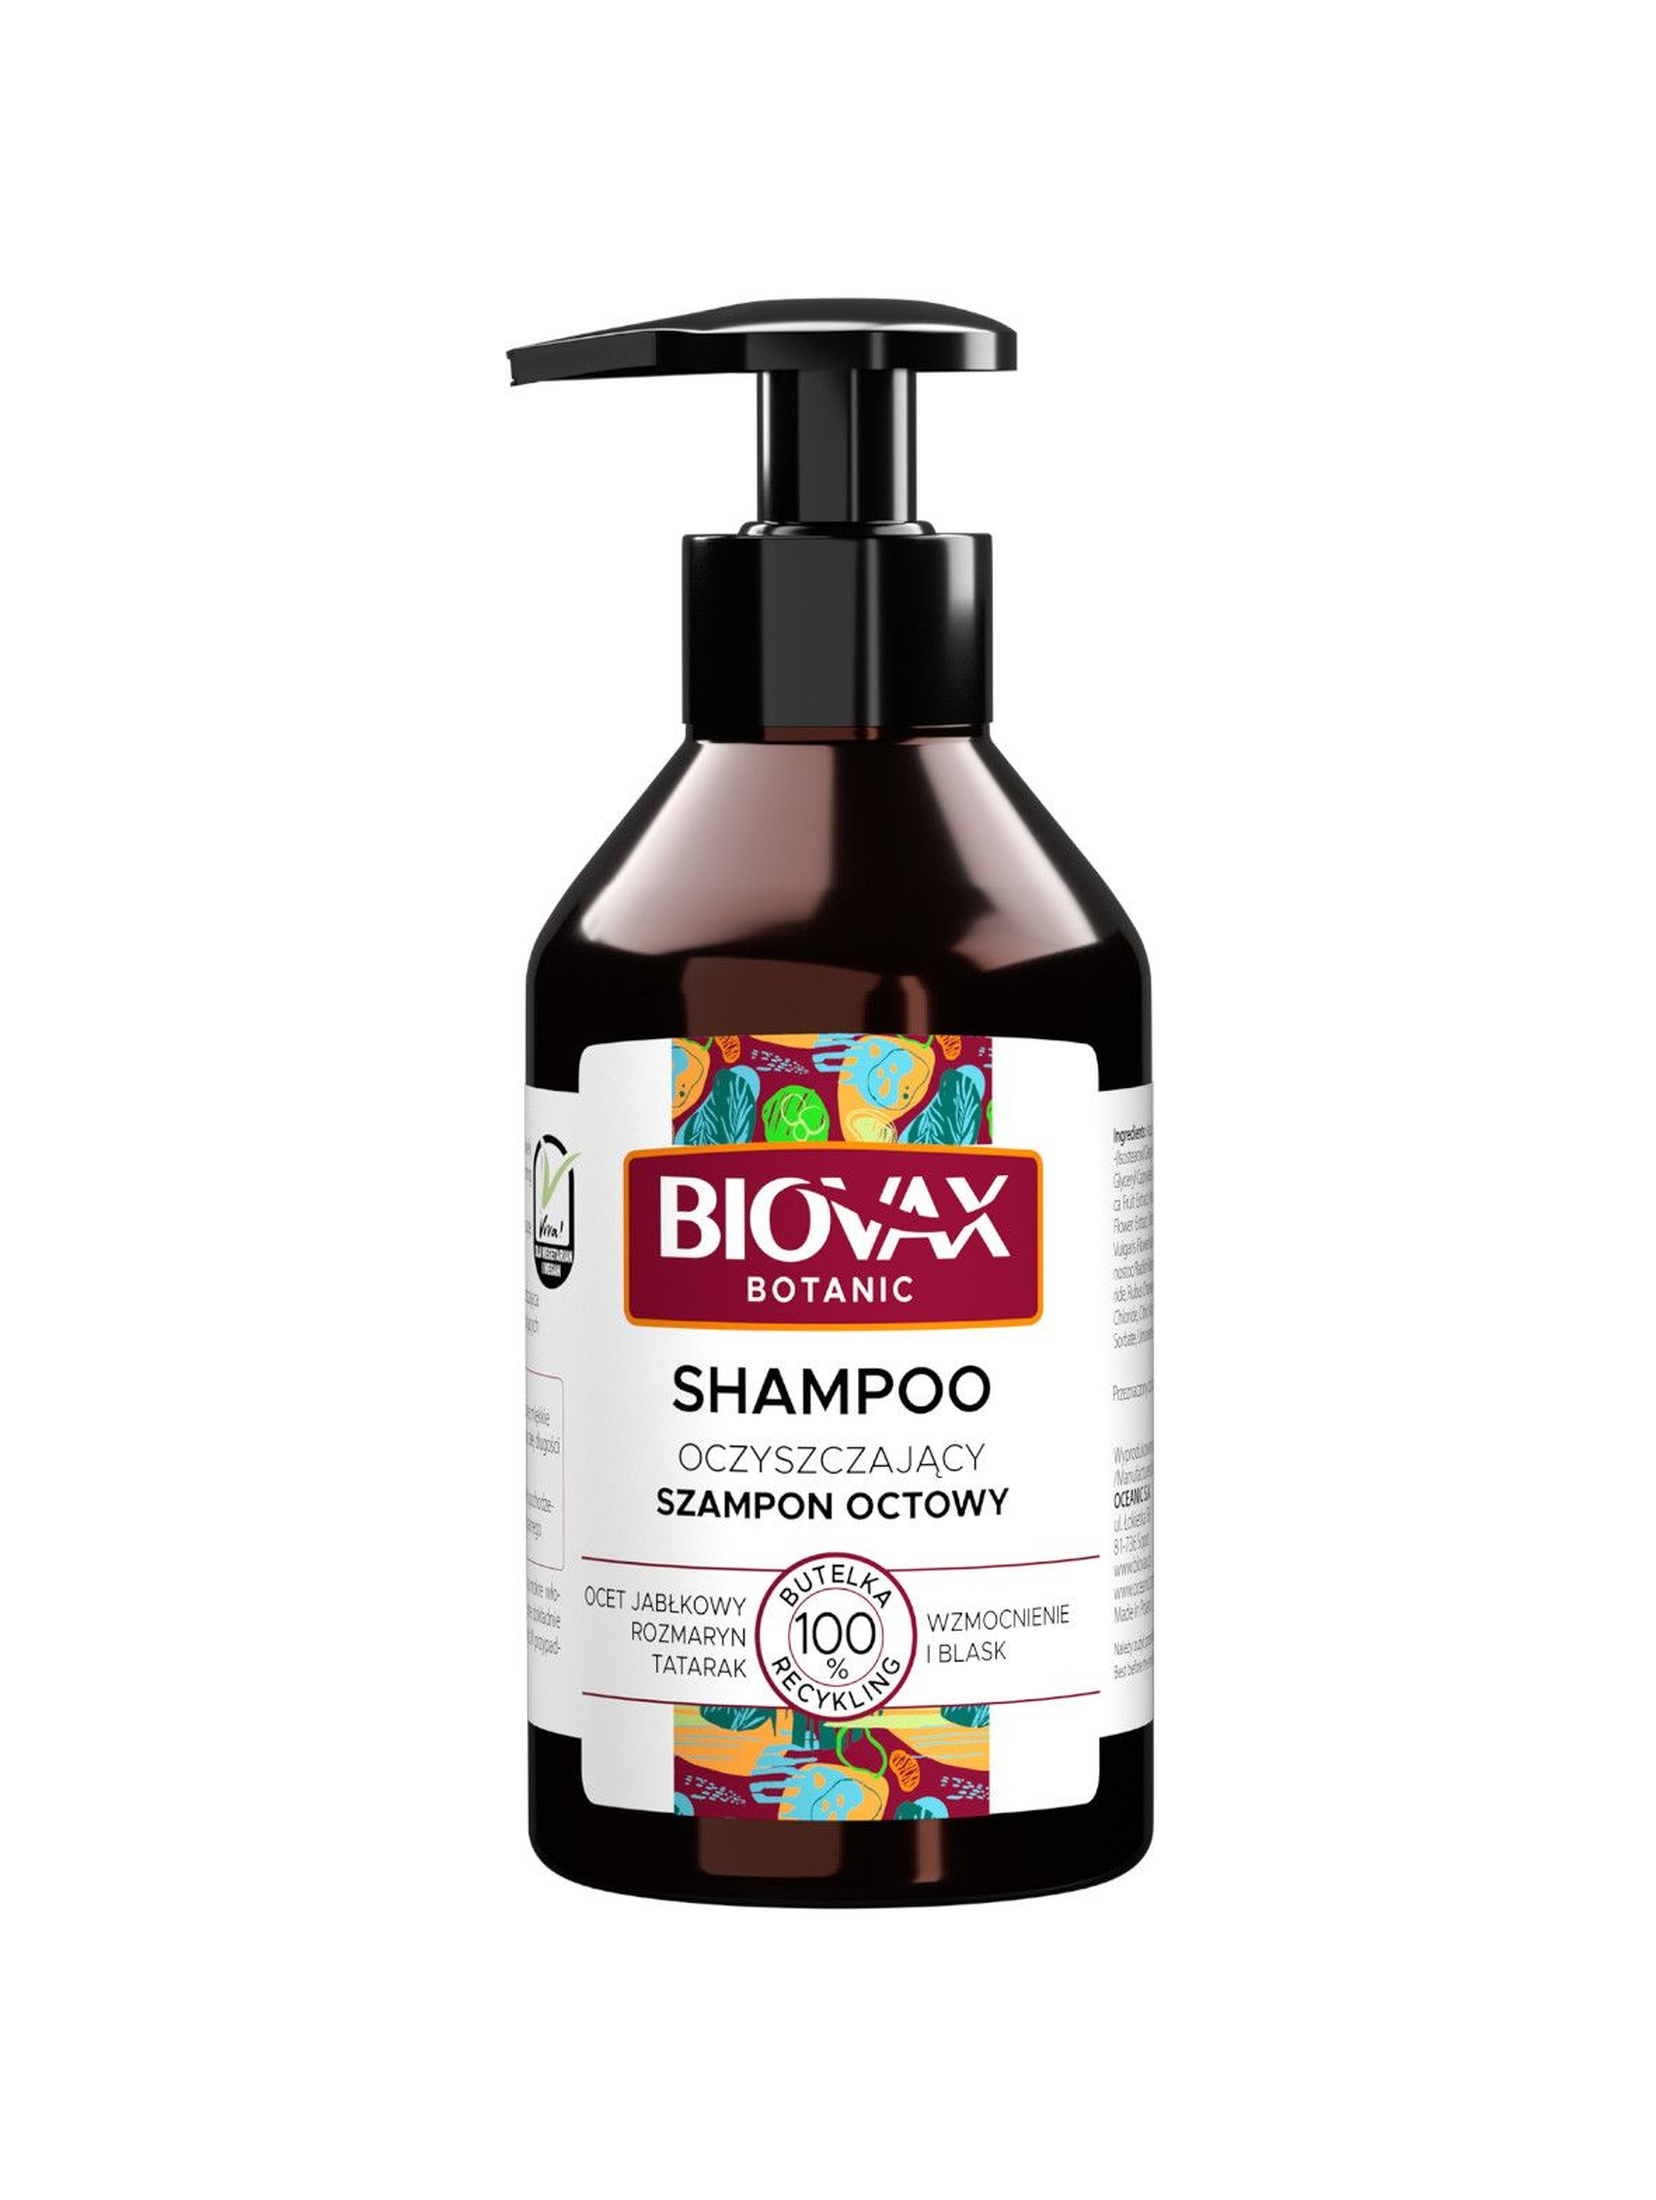 Biovax Botanic Oczyszczający szampon octowy 200ml